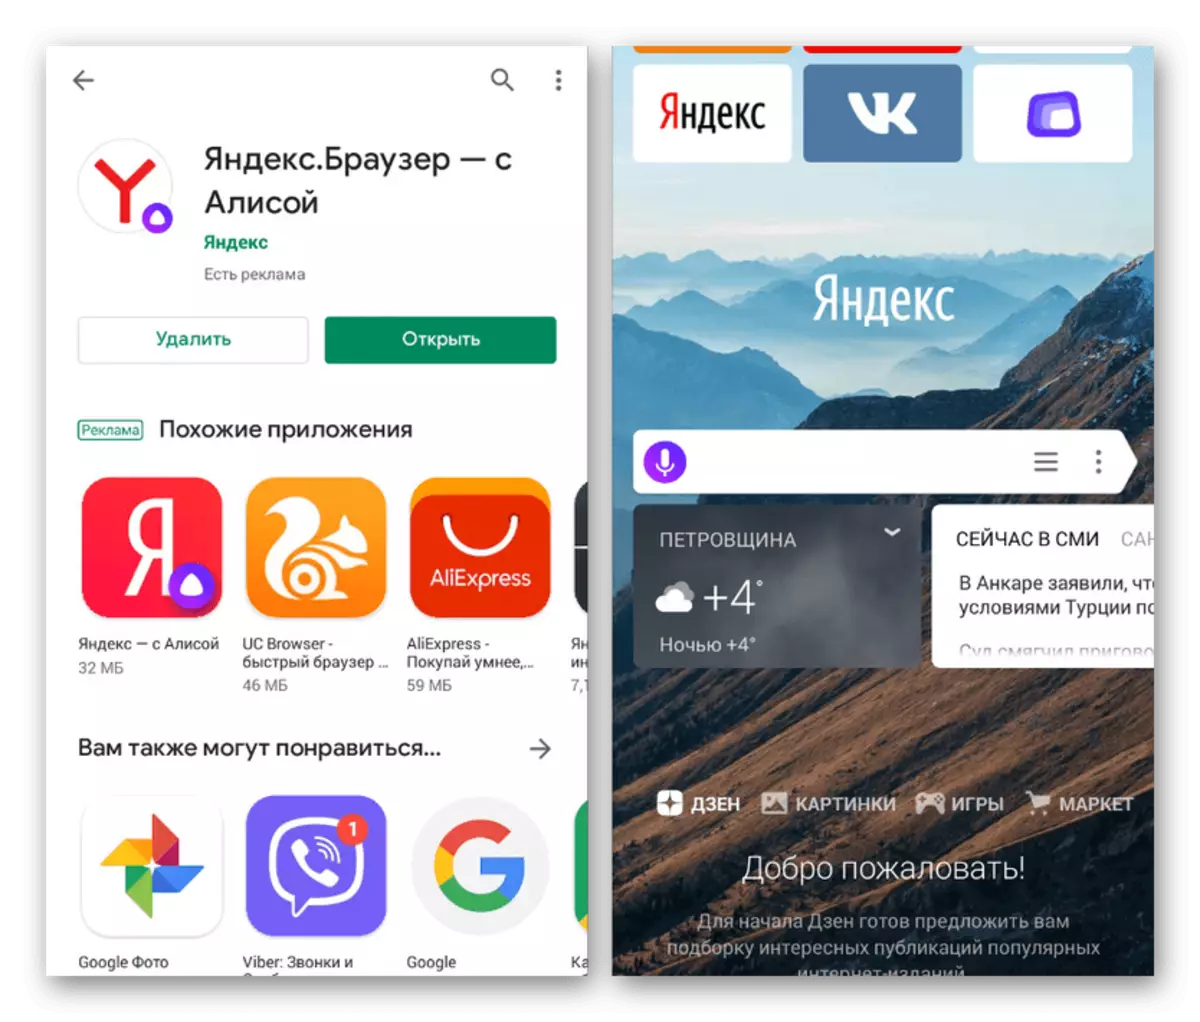 Isampula Ikhasi lokuqala le-yandex e Yandex.Browser